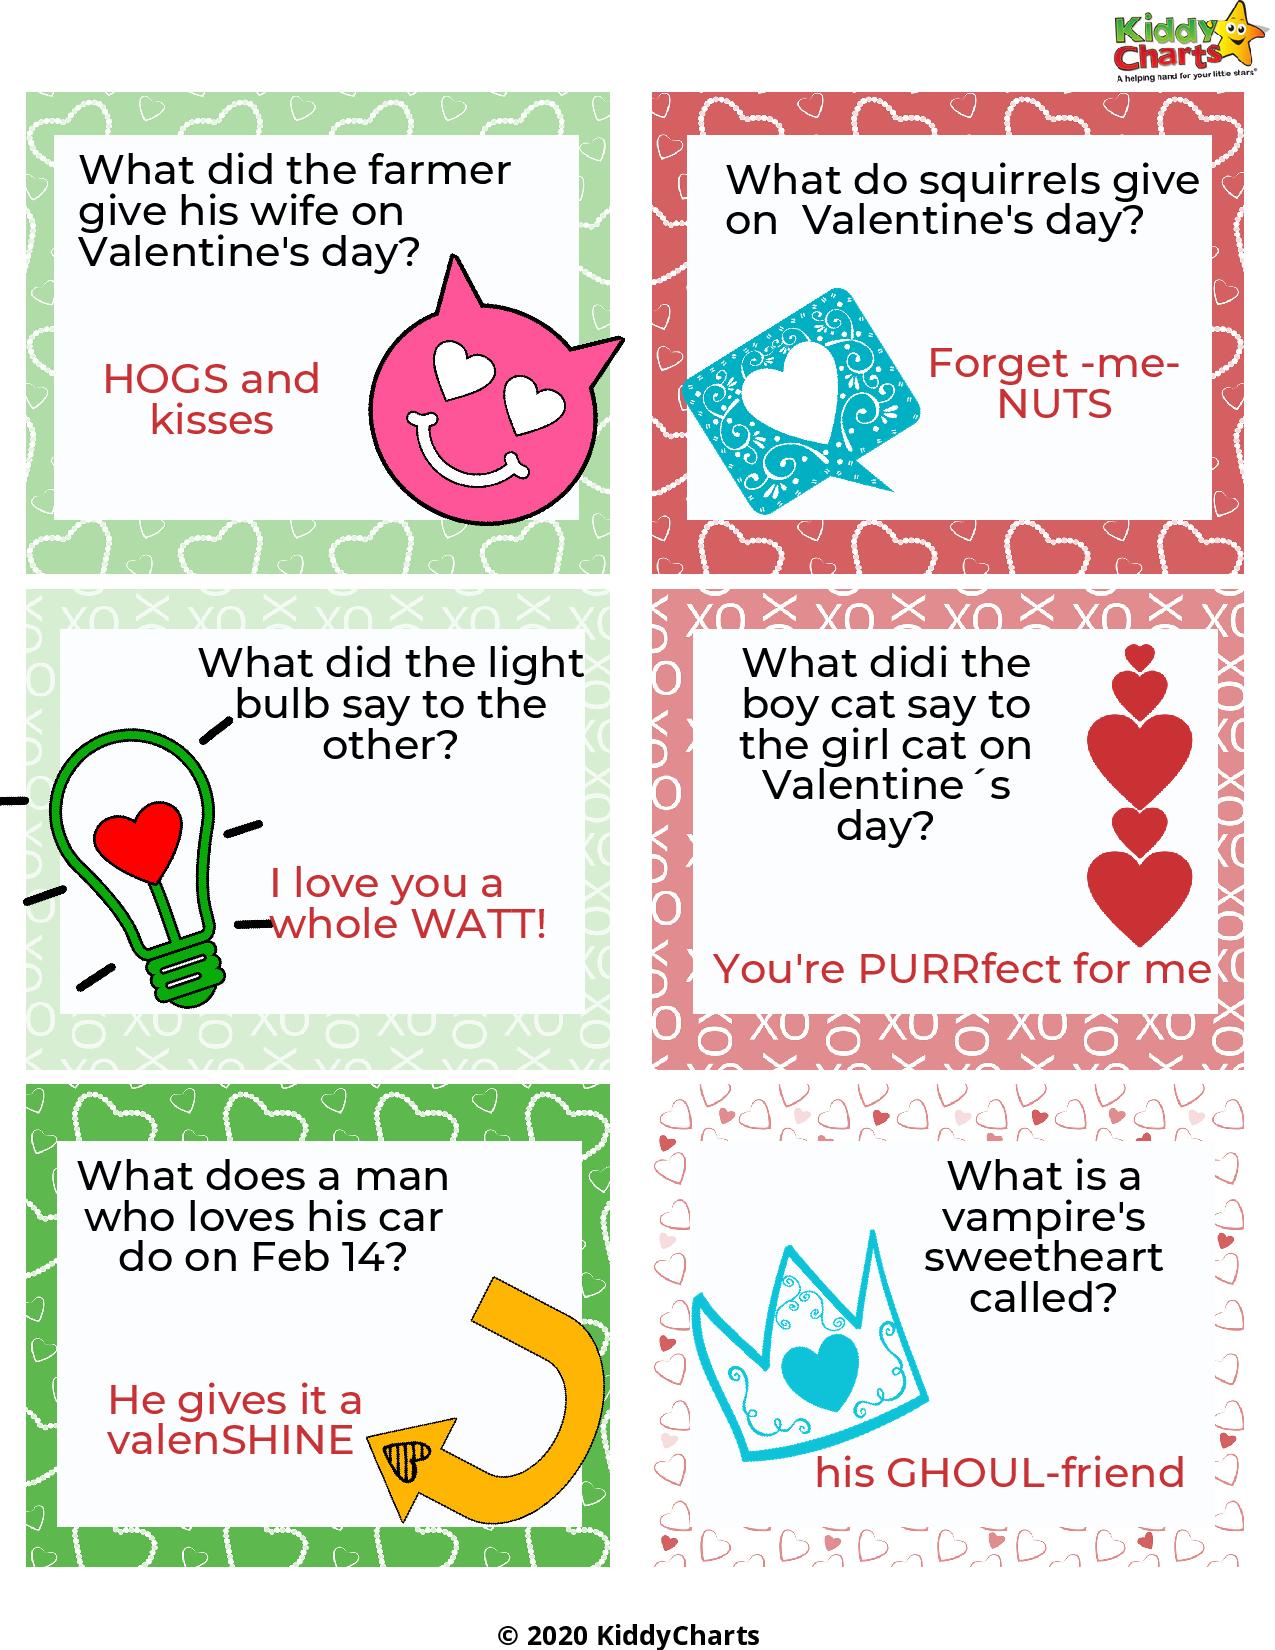 valentine-s-day-jokes-printables-kiddycharts